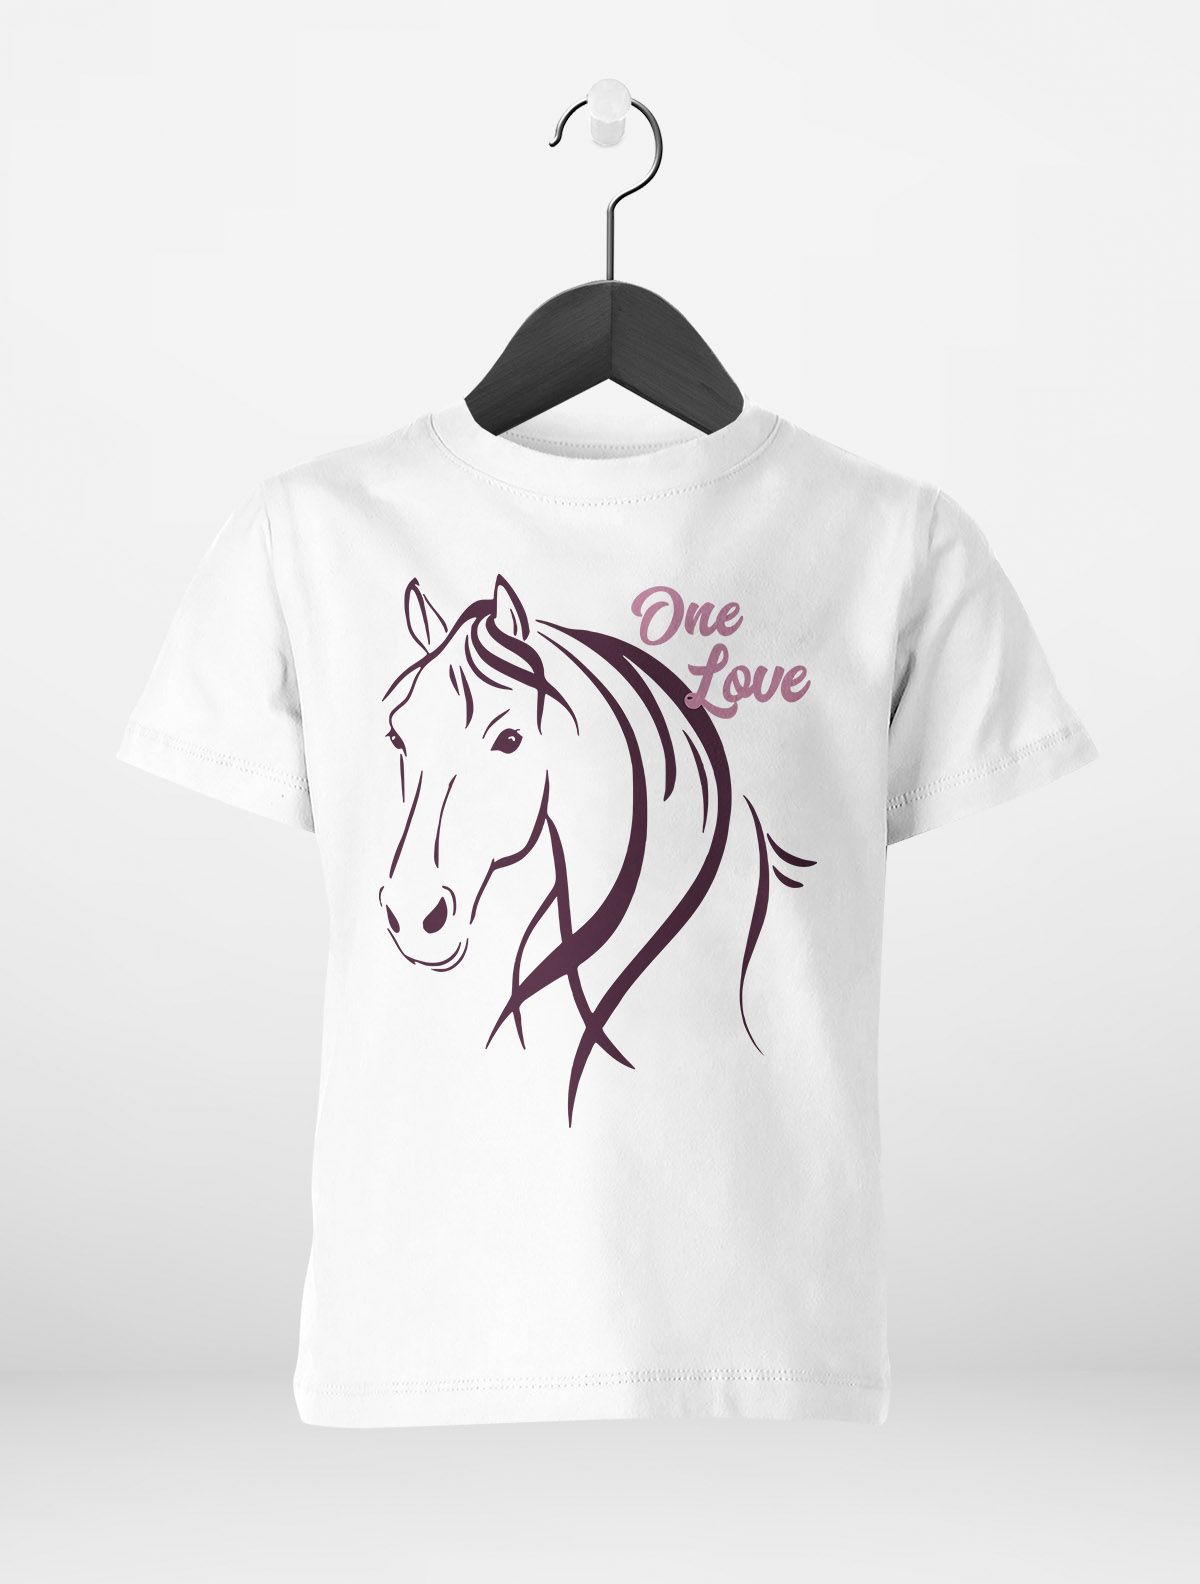 Pferde-Motiv | Mädchen Reiten Pferdeliebhaber Kinder T-Shirt Mädchen eBay Geschenk für